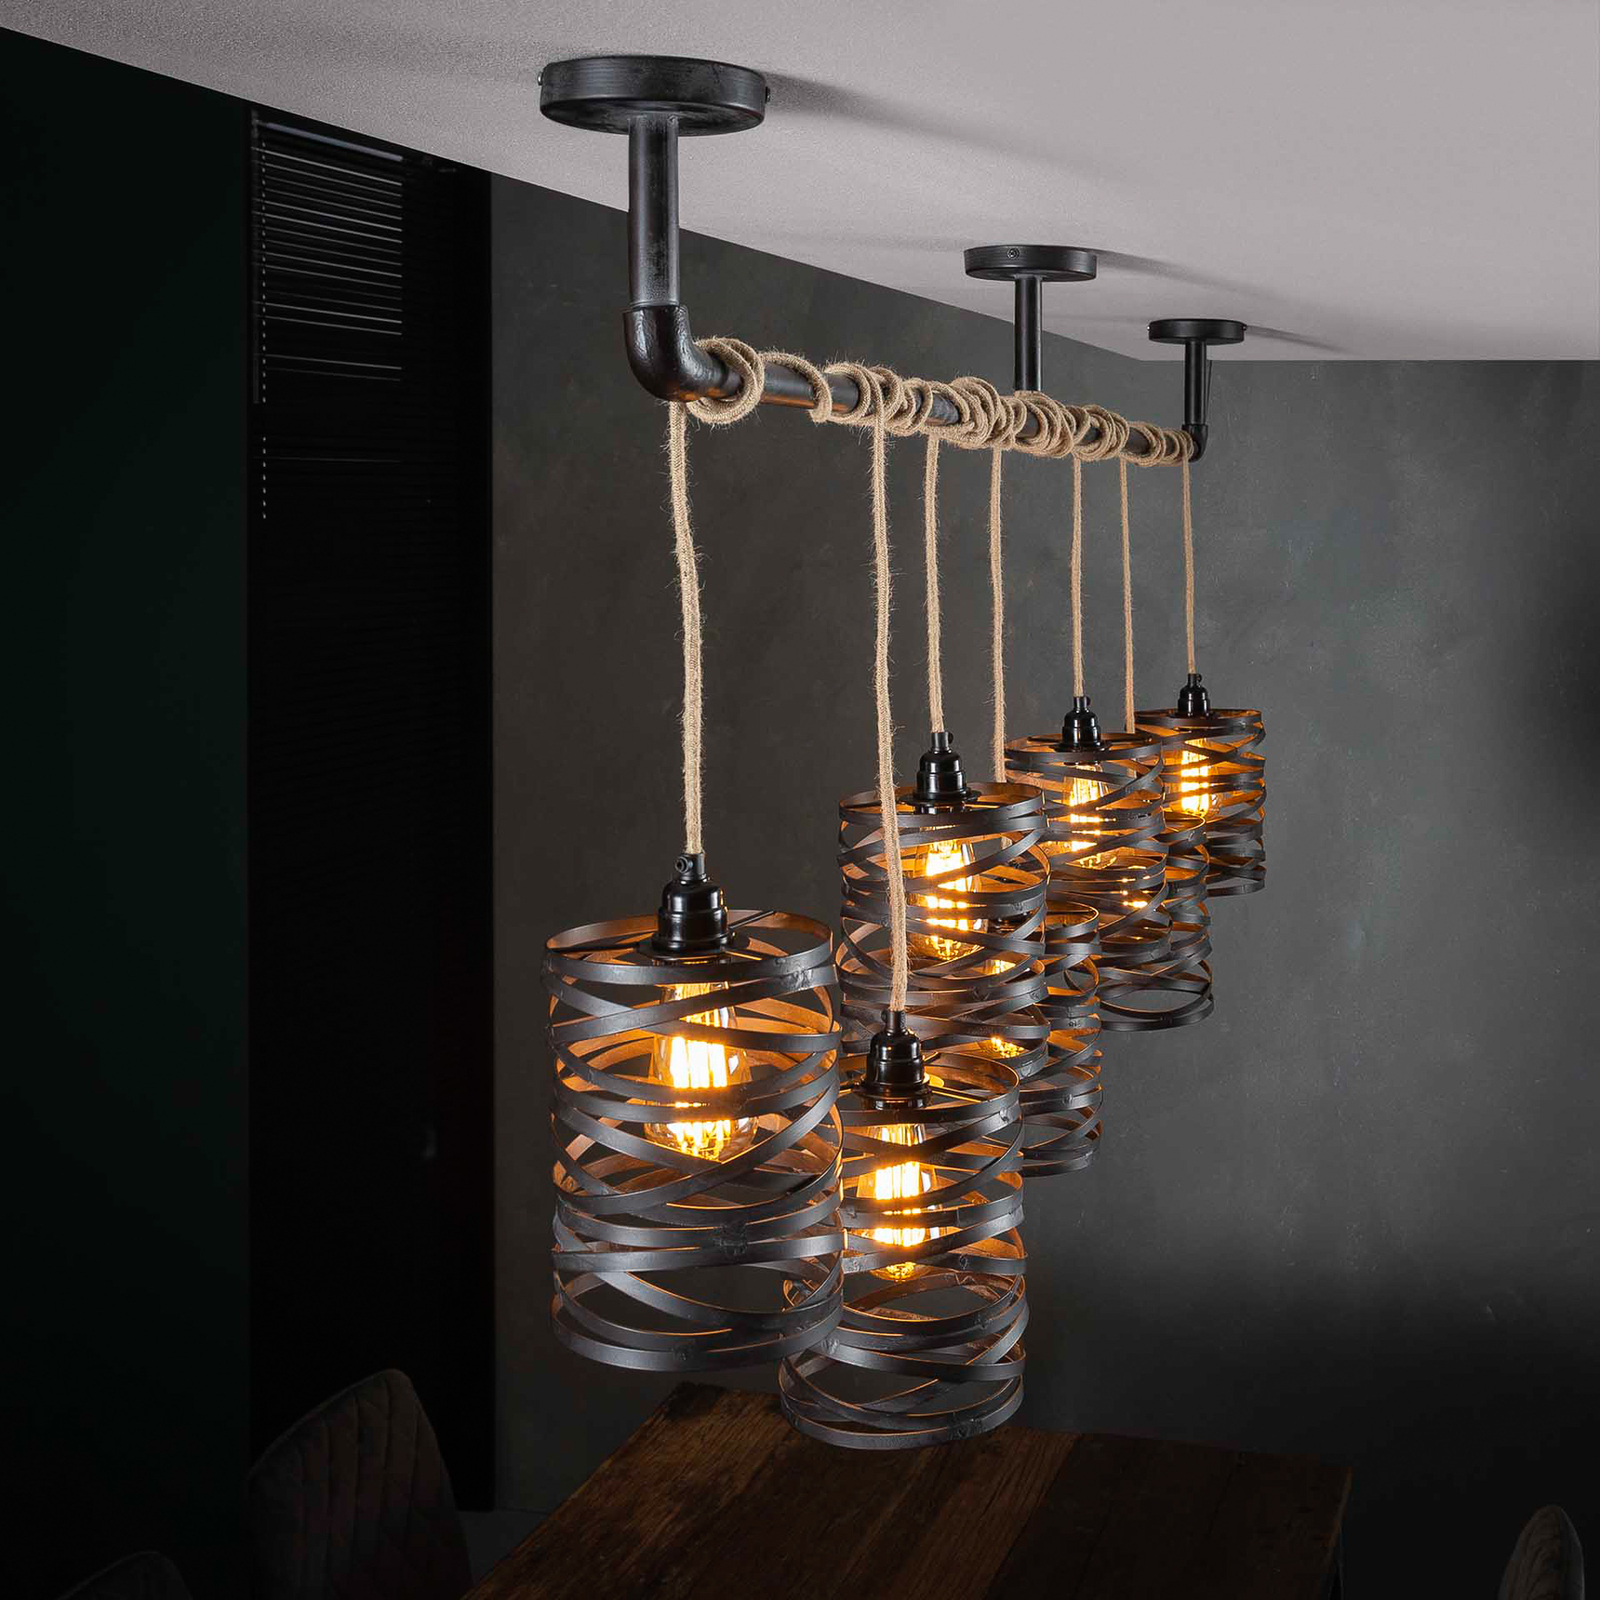 Crossround hanglamp met 7 spiraalvormige kappen